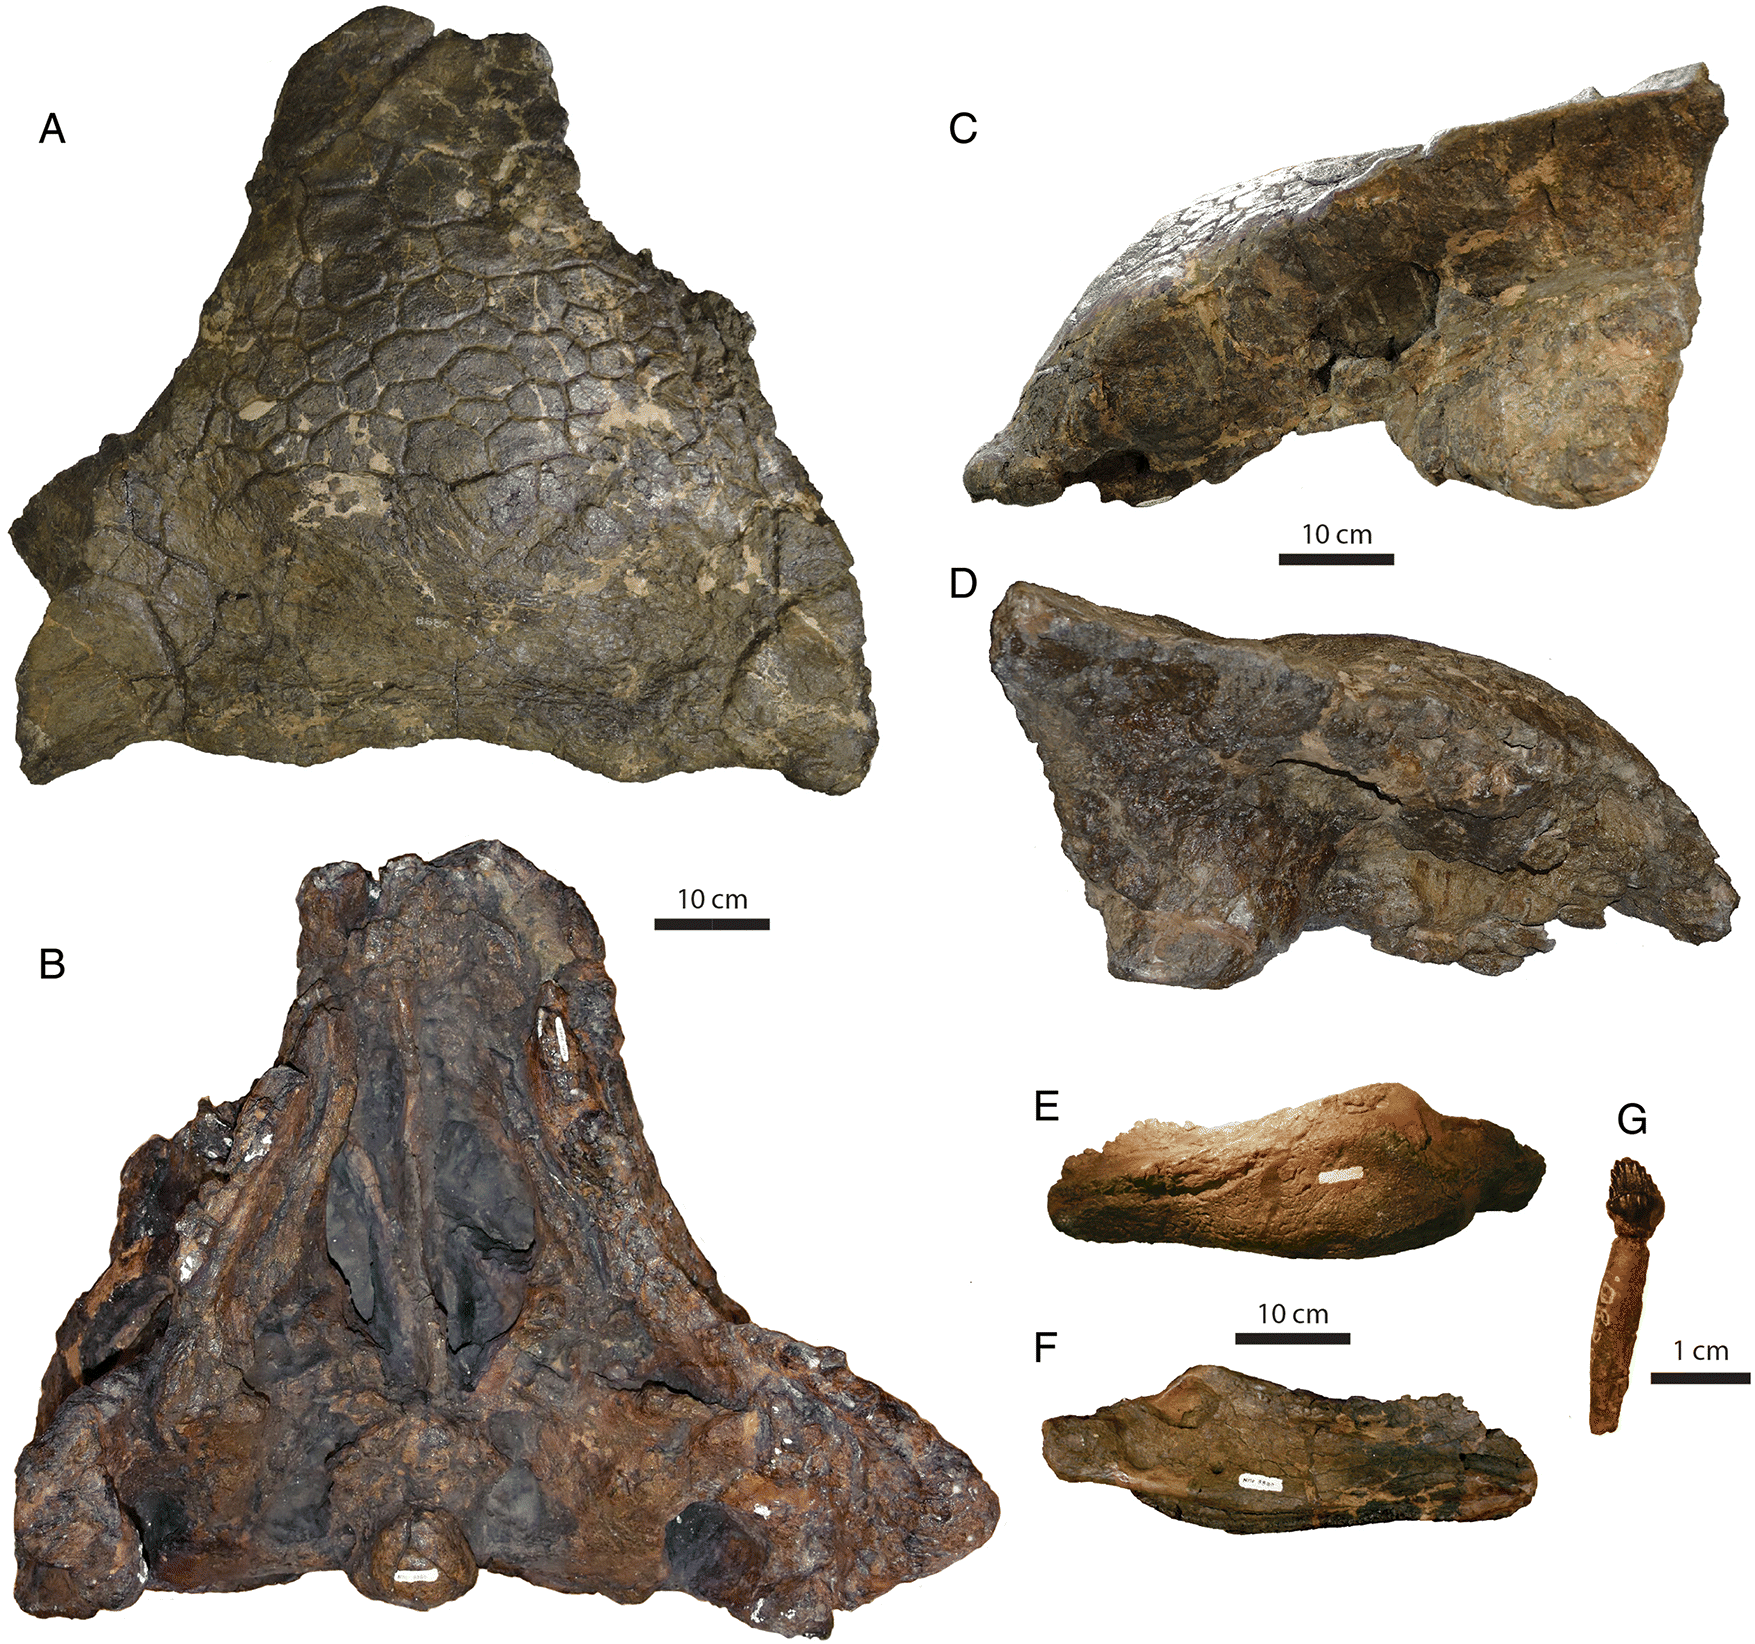 Částečně zachovaná lebka dosud největšího známého exempláře druhu A. magniventris s kat. ozn. CMN 8880, včetně fragmentu spodní čelisti (E-F) a zubu s kořenem (G). Délka lebky činí v nejvzdálenějších bodech krania 67,1 cm a její maximální šířka pak p